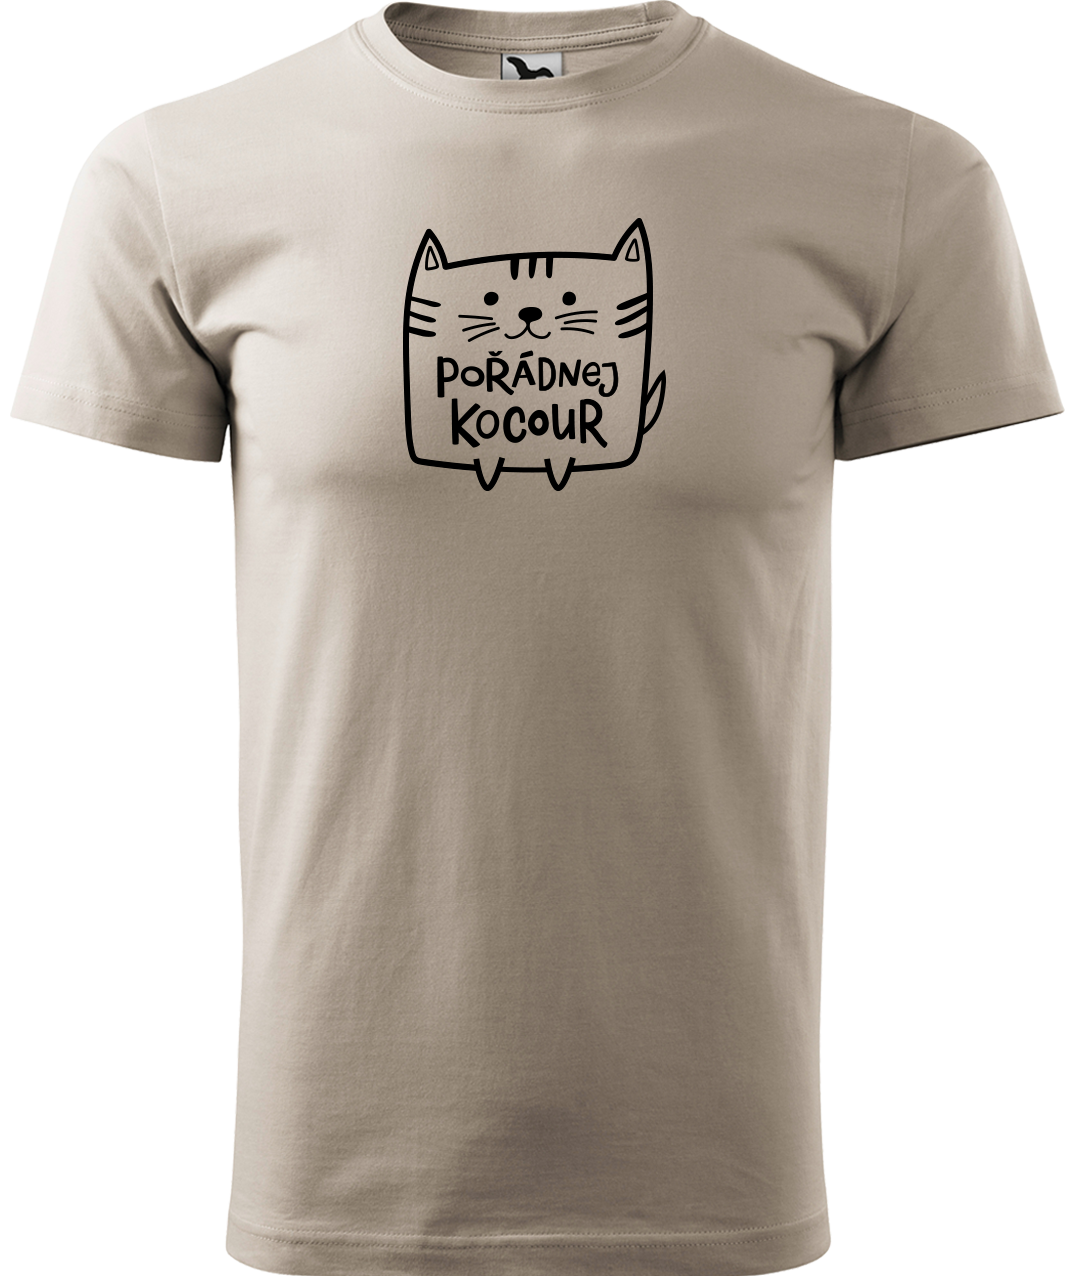 Pánské tričko s kočkou - Pořádnej kocour Velikost: M, Barva: Ledově šedá (51)